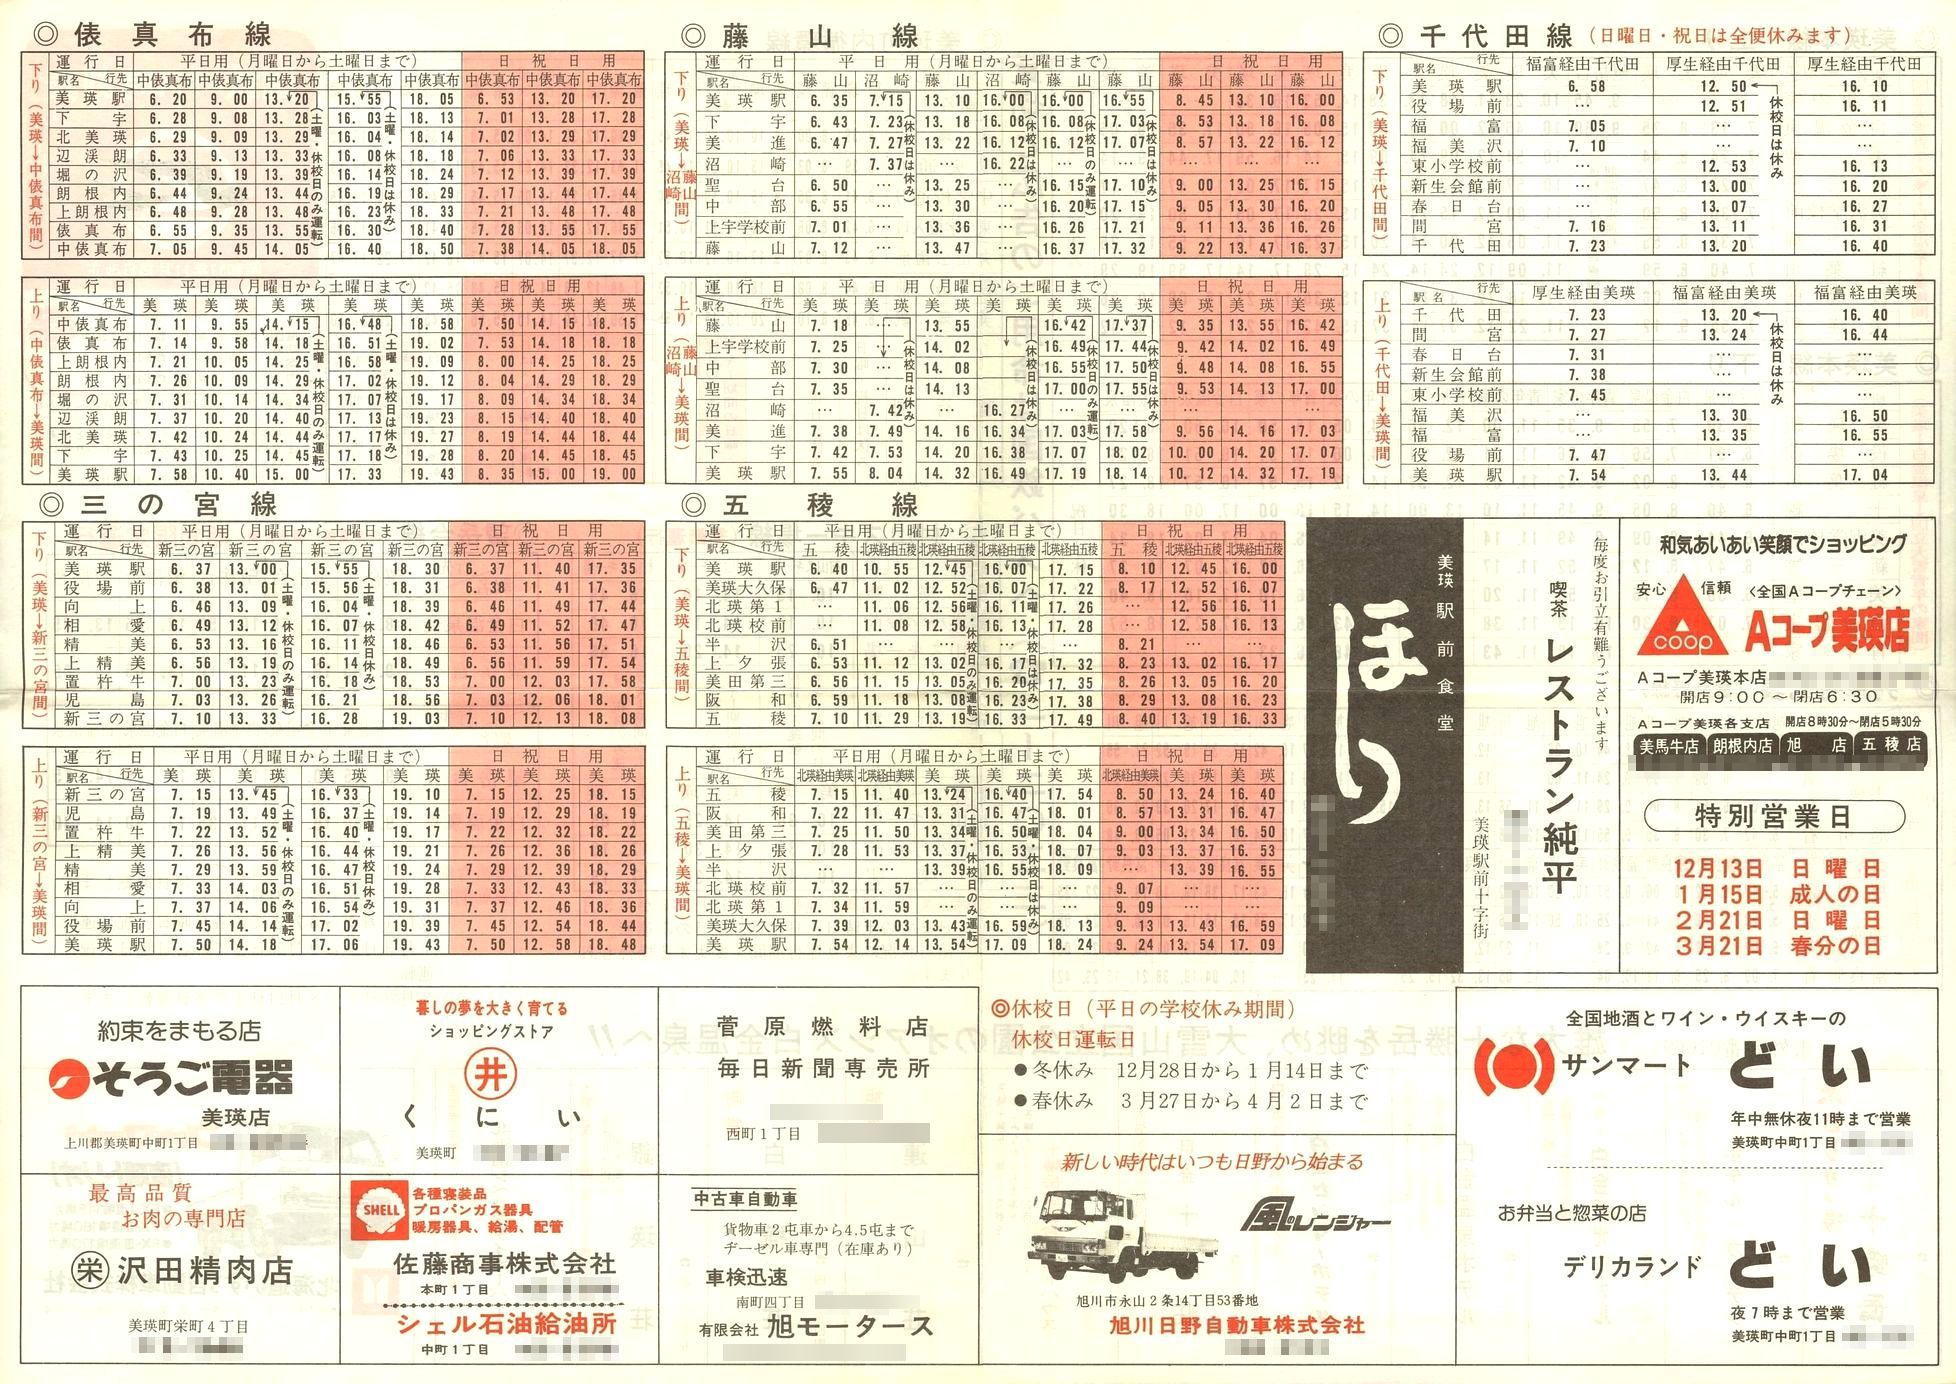 1982-11-15改正_国鉄バス_美瑛線時刻表裏面